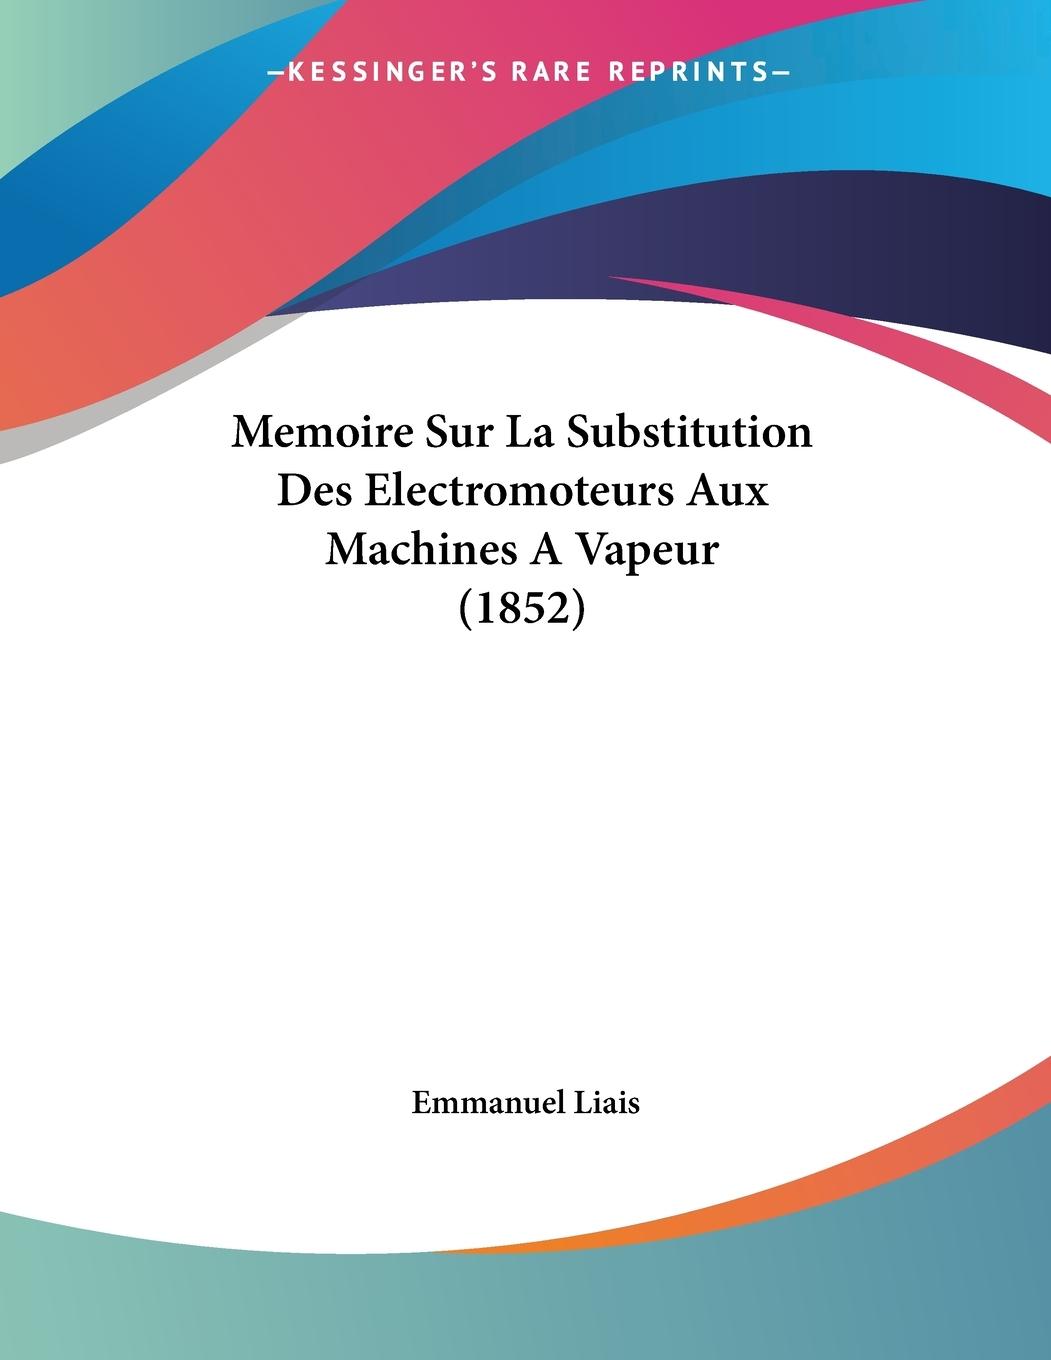 Memoire Sur La Substitution Des Electromoteurs Aux Machines A Vapeur (1852) - Liais, Emmanuel